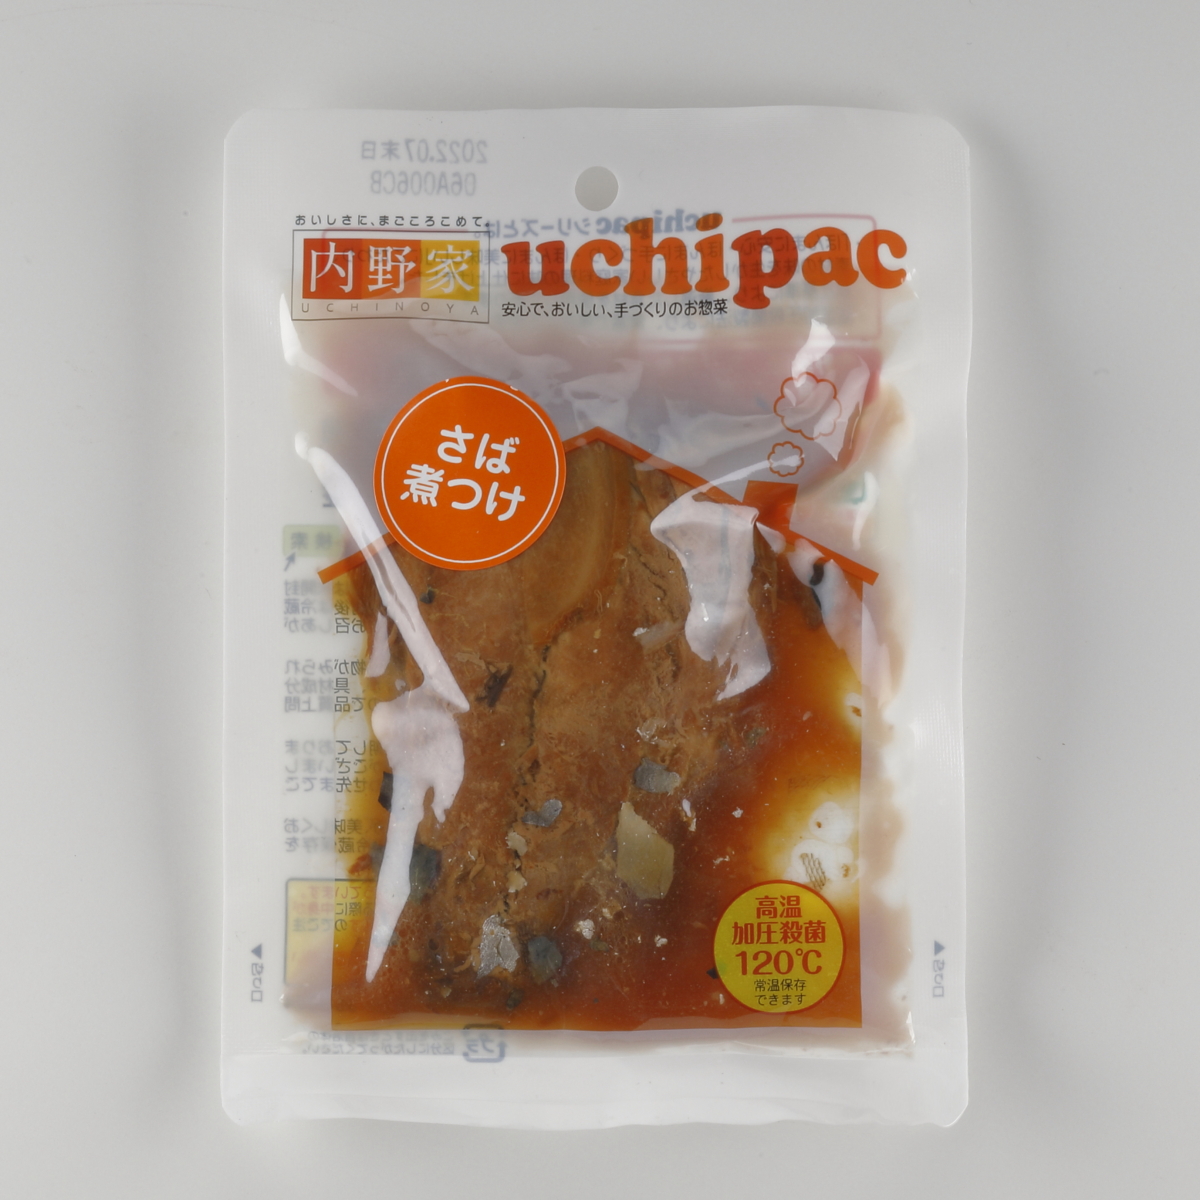 内野家 uchipac お魚おかずセット 2種×3個